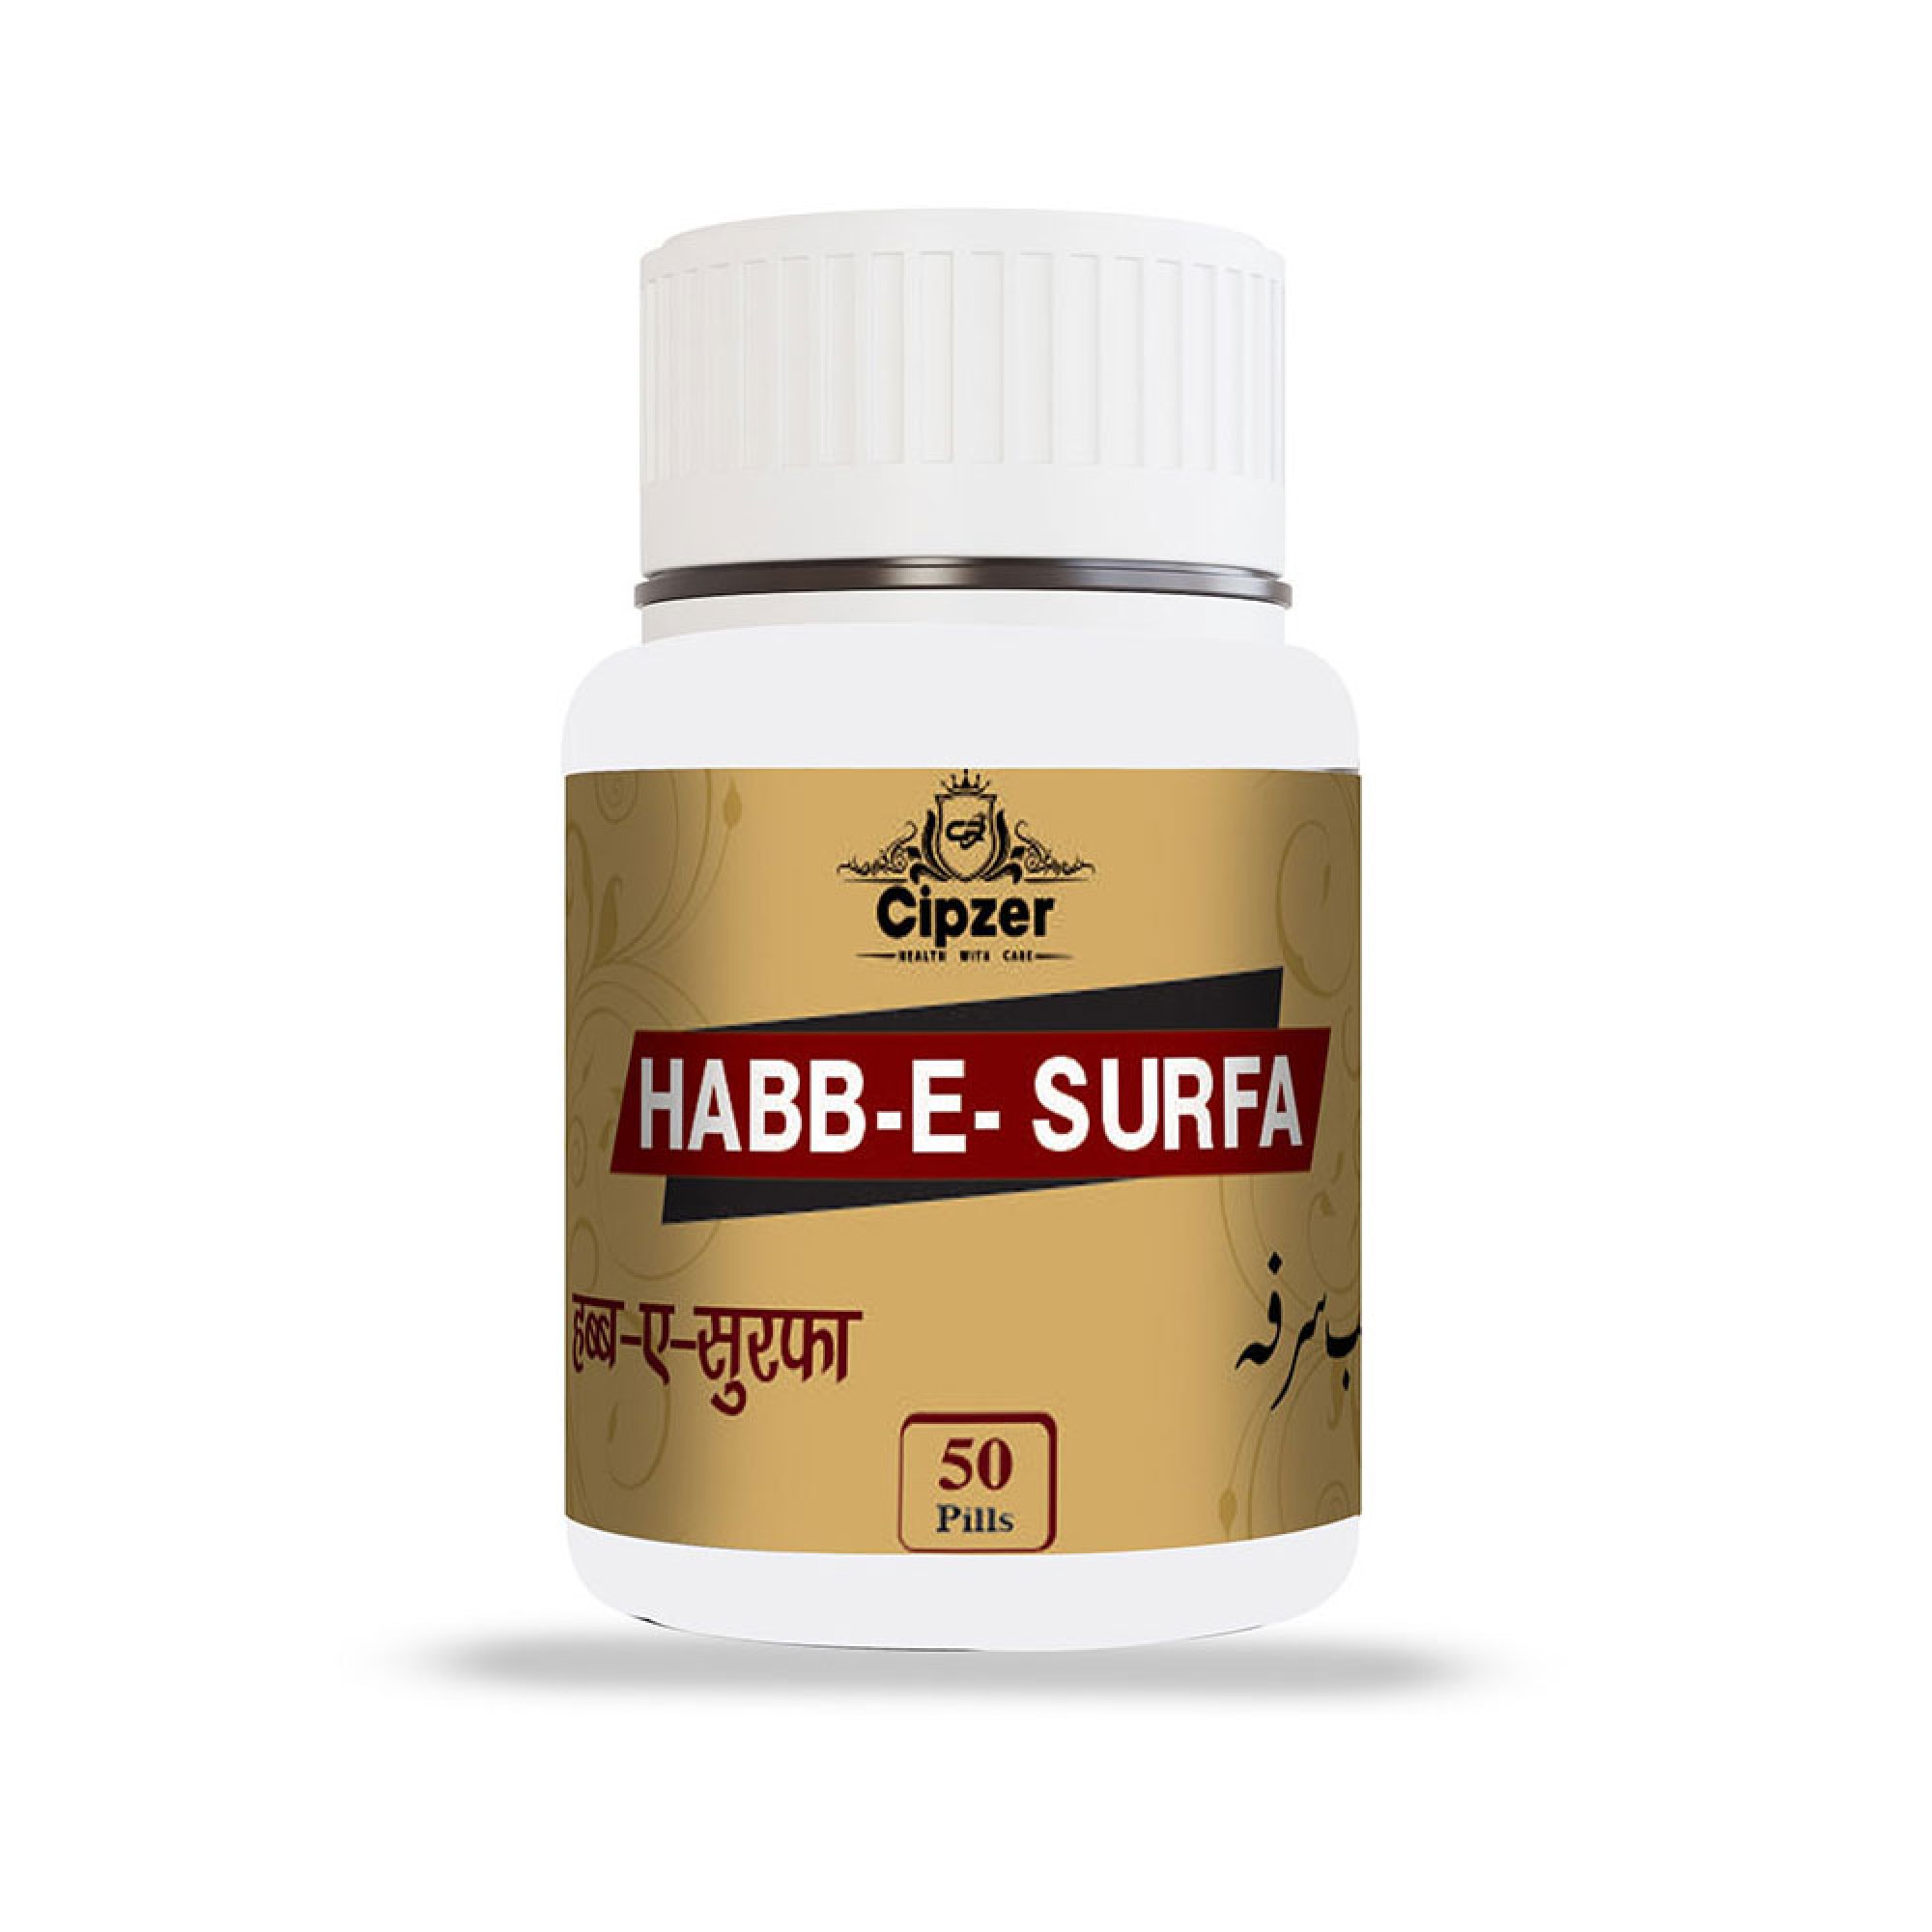 Cipzer Habb-e-surfa 50 pills